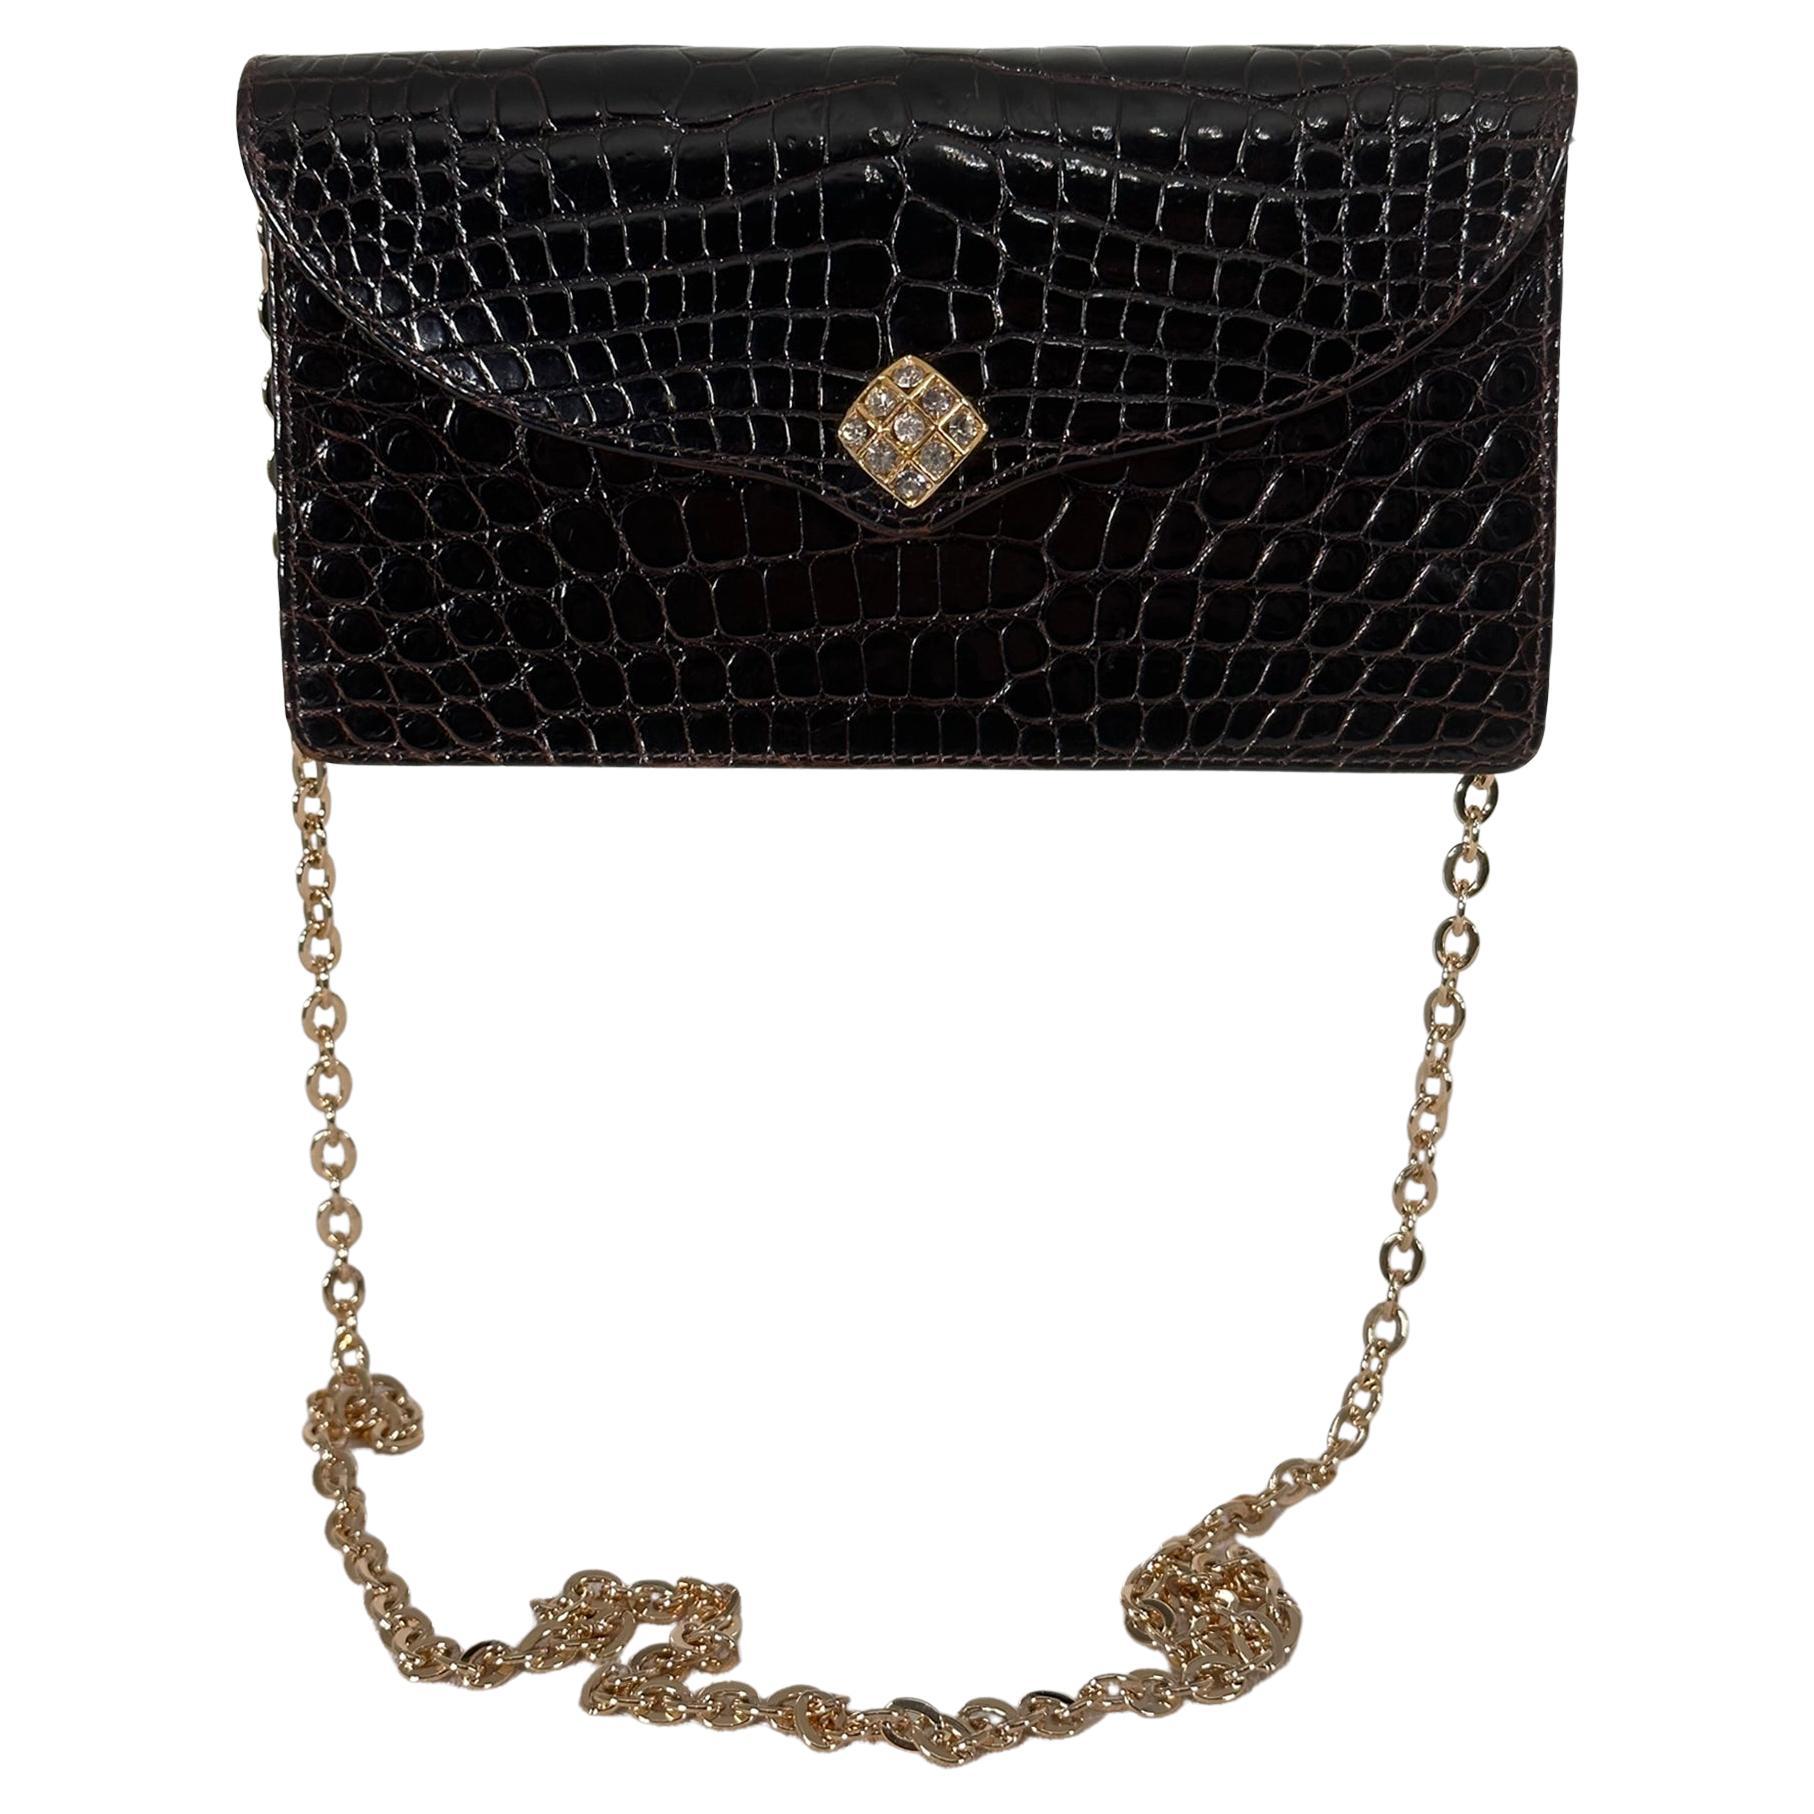 Lana of London Dark Chocolate Brown Alligator Clutch  Shoulder Bag  For Sale